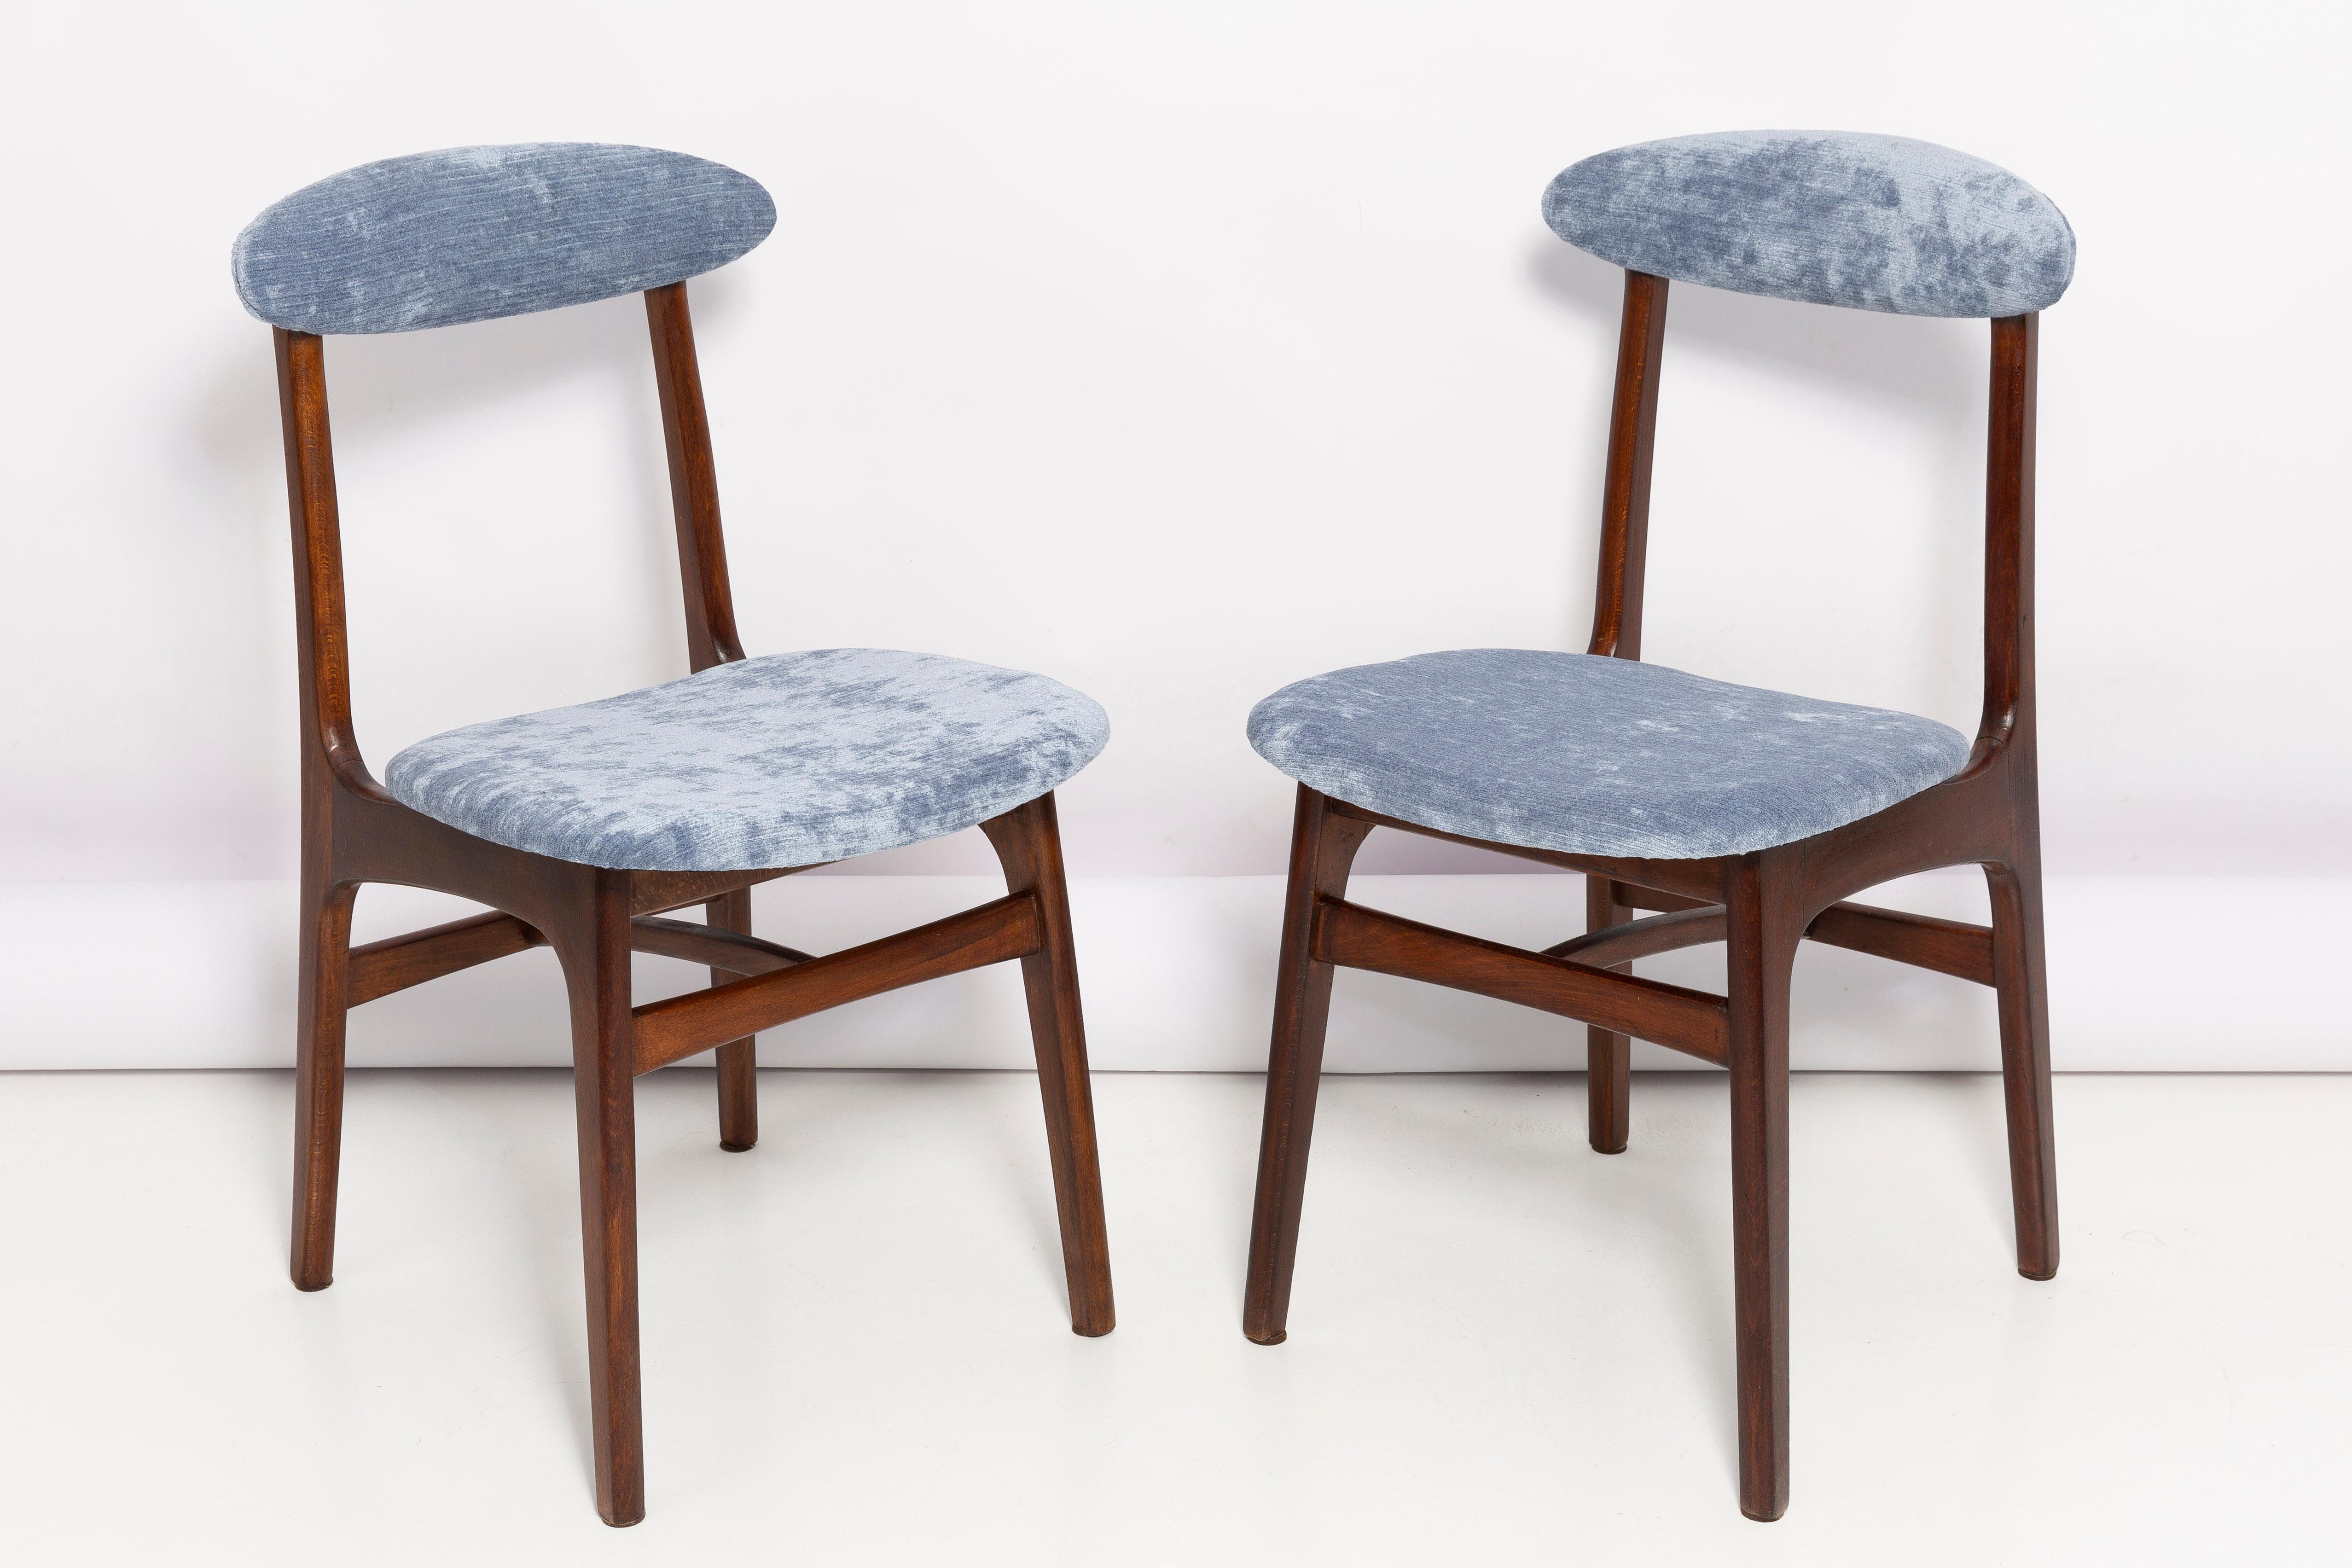 Belles chaises vintage de forme légère conçues par le Prof. Rajmund Halas. Elle a été fabriquée en bois de hêtre. Conçue et produite en Pologne. Les chaises ont été remises à neuf après une rénovation complète du tissu d'ameublement, et le travail